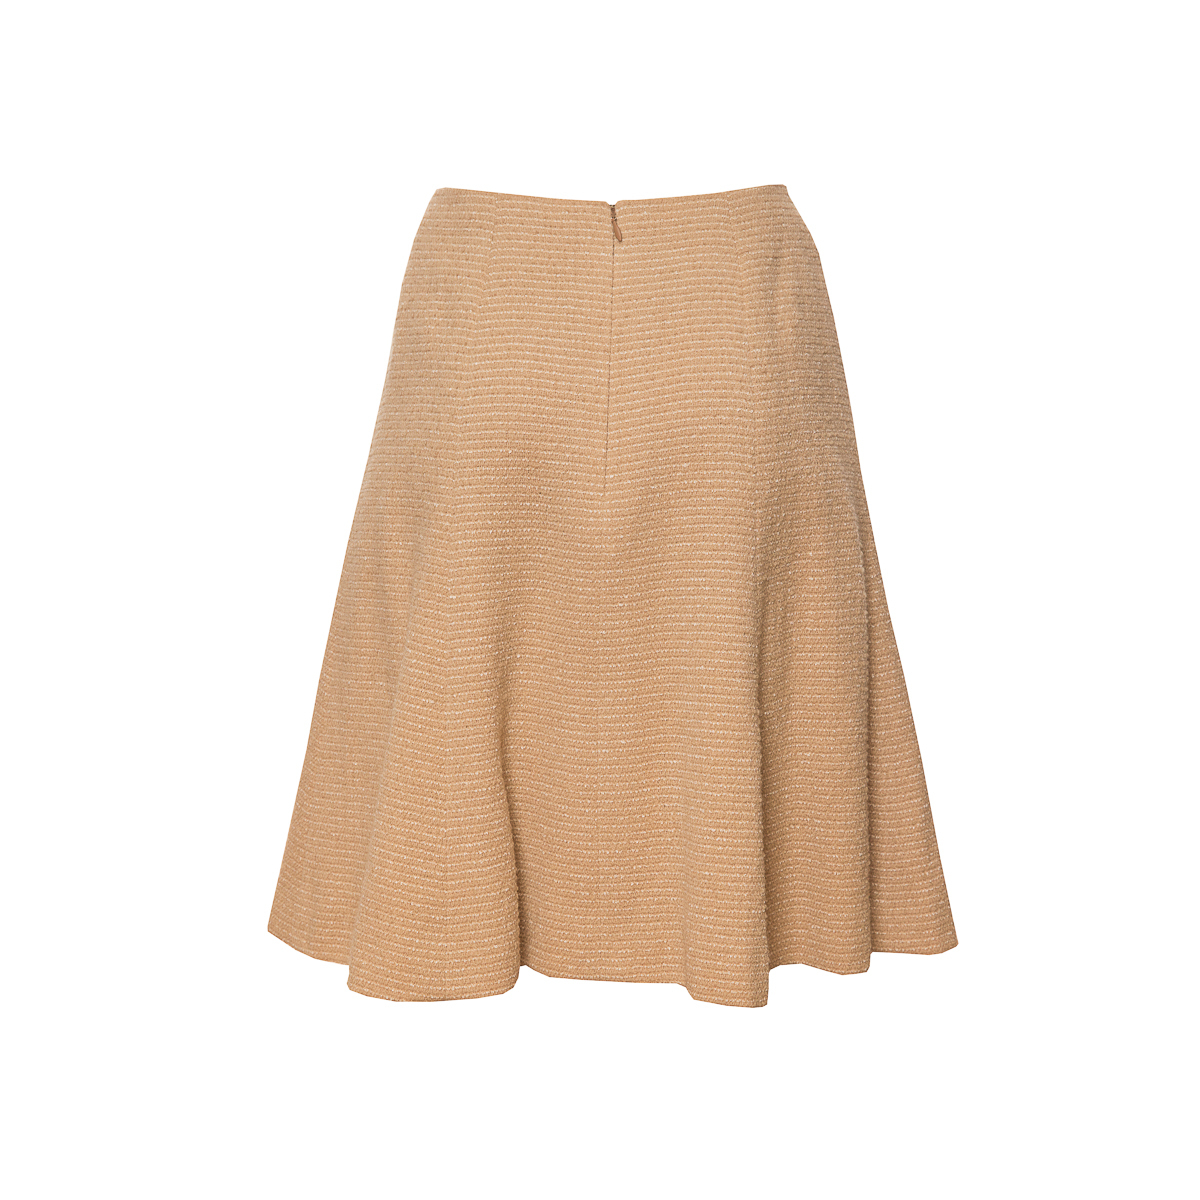 Элегантная расклешенная юбка из твида песочного цвета от Chanel, 36 размер.